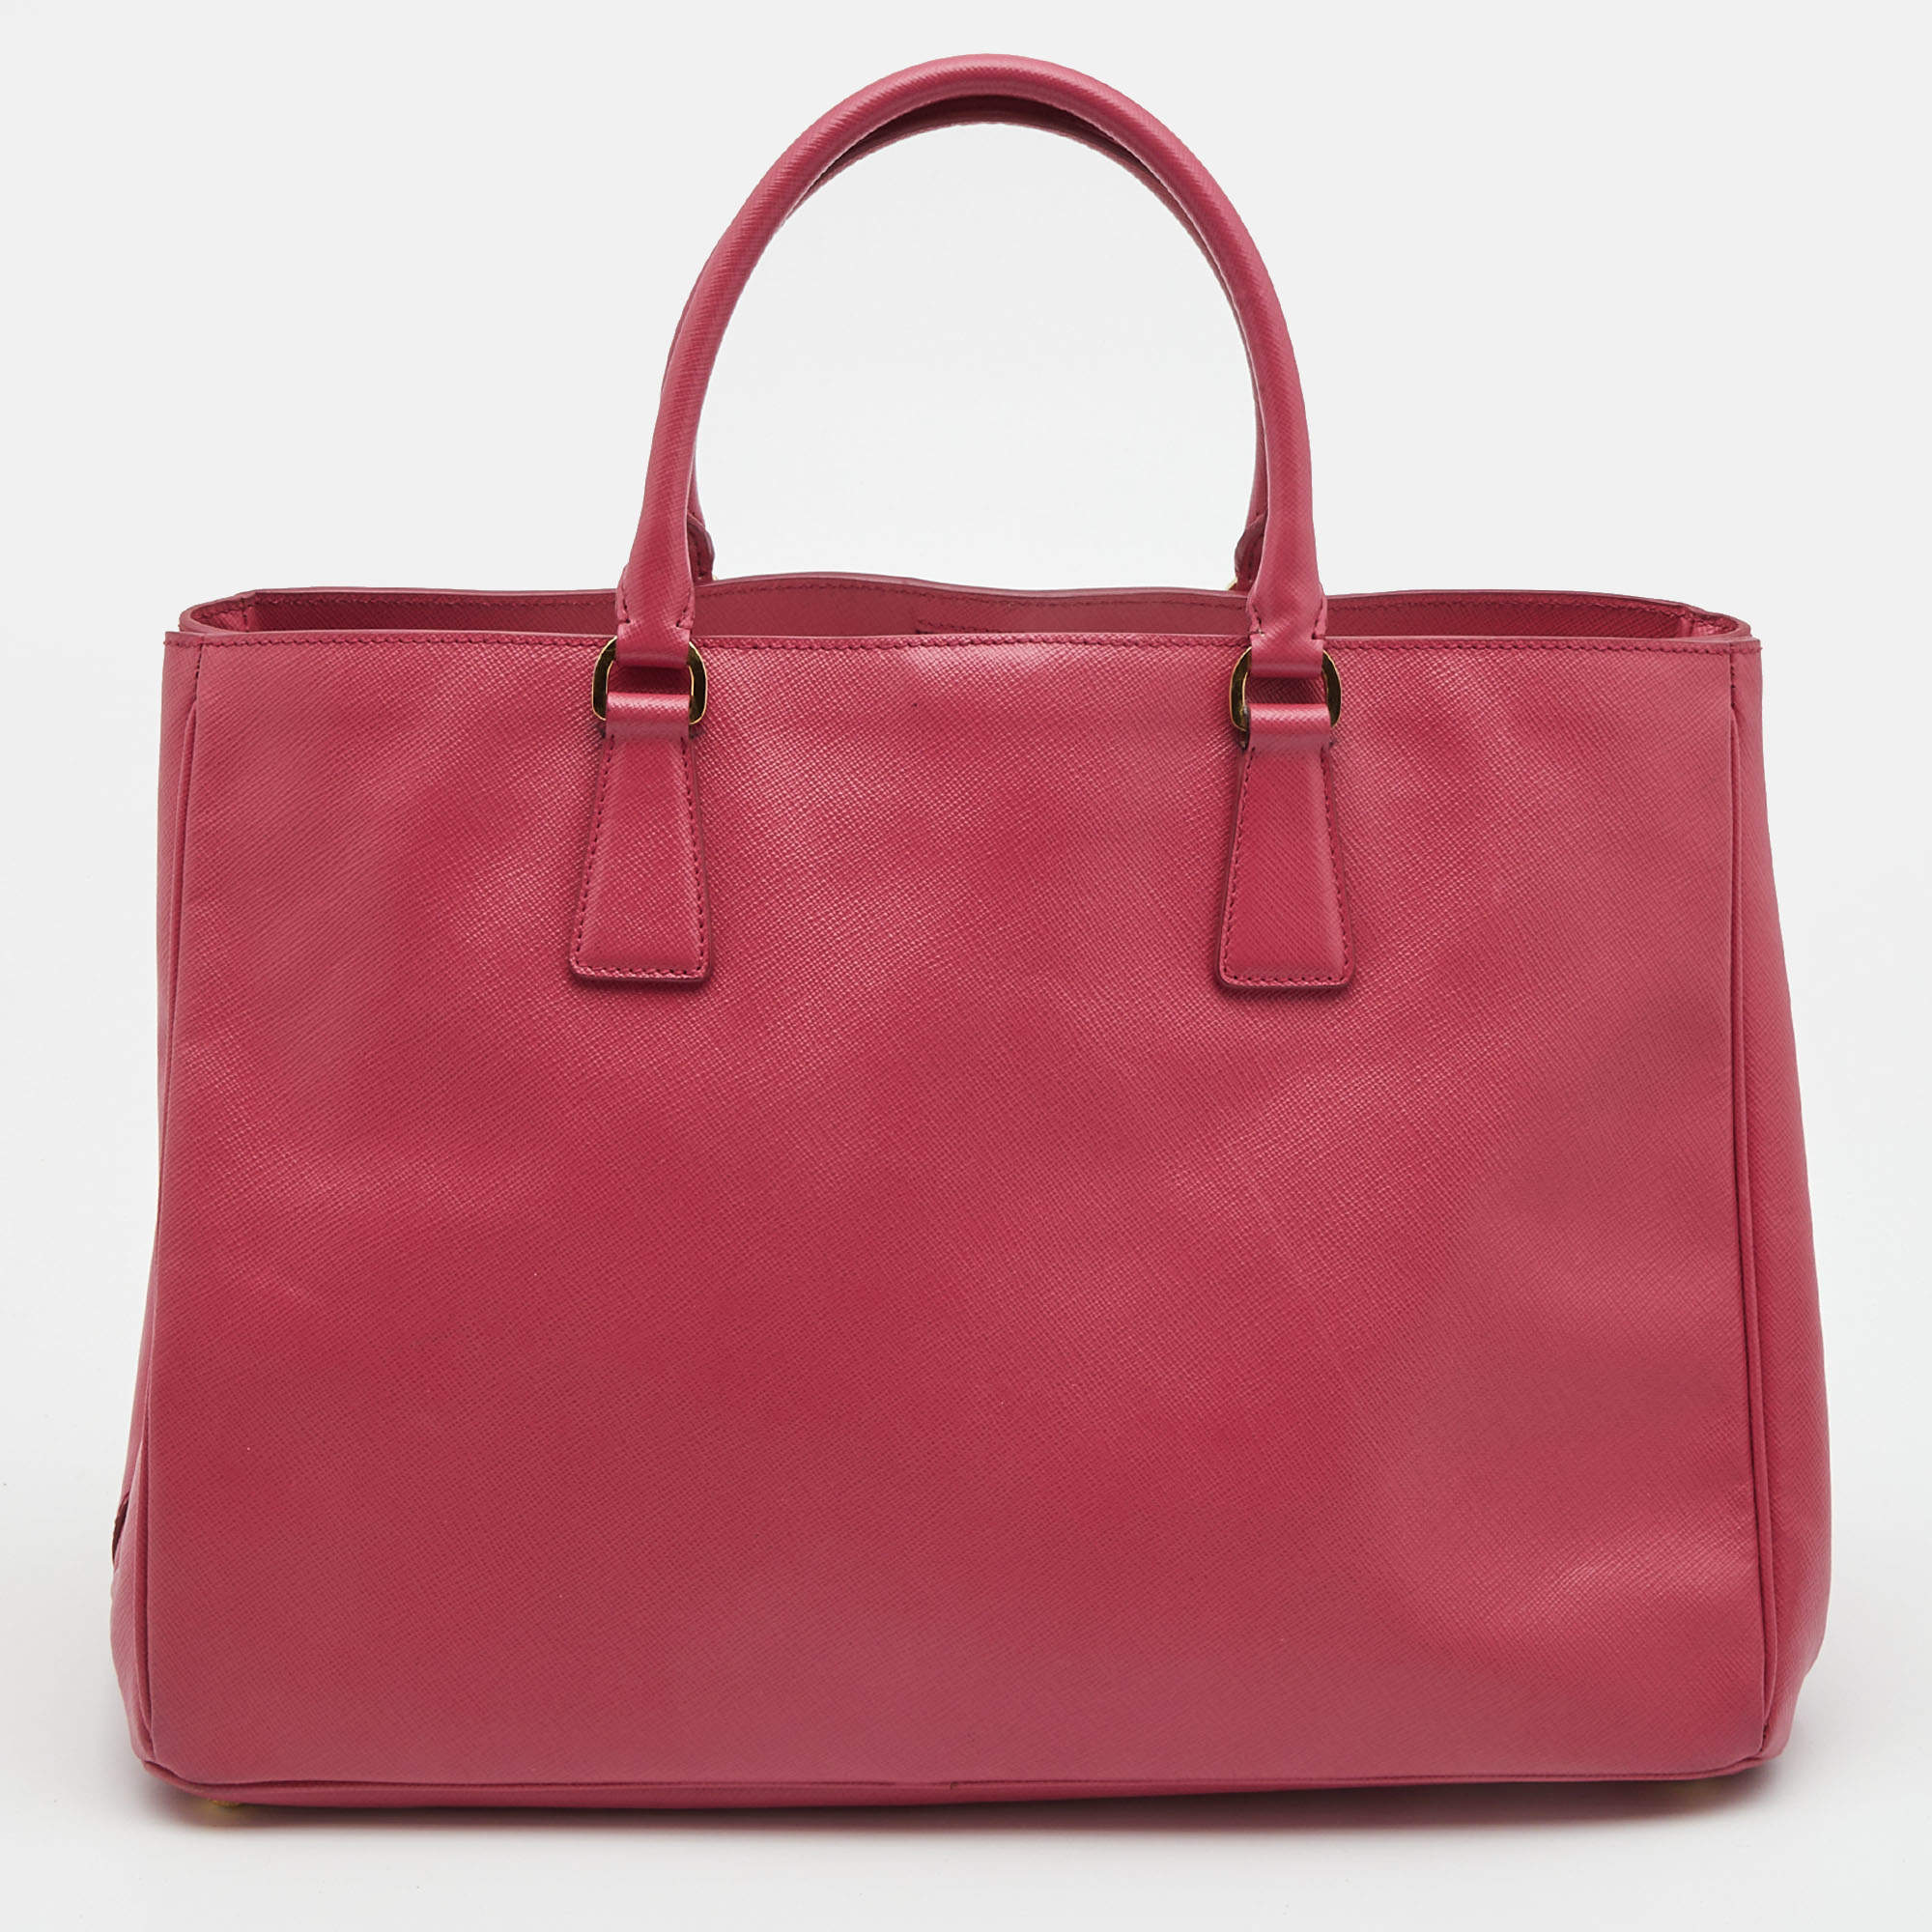 PRADA Lux Large Saffiano Leather Tote Shoulder Bag Light Pink